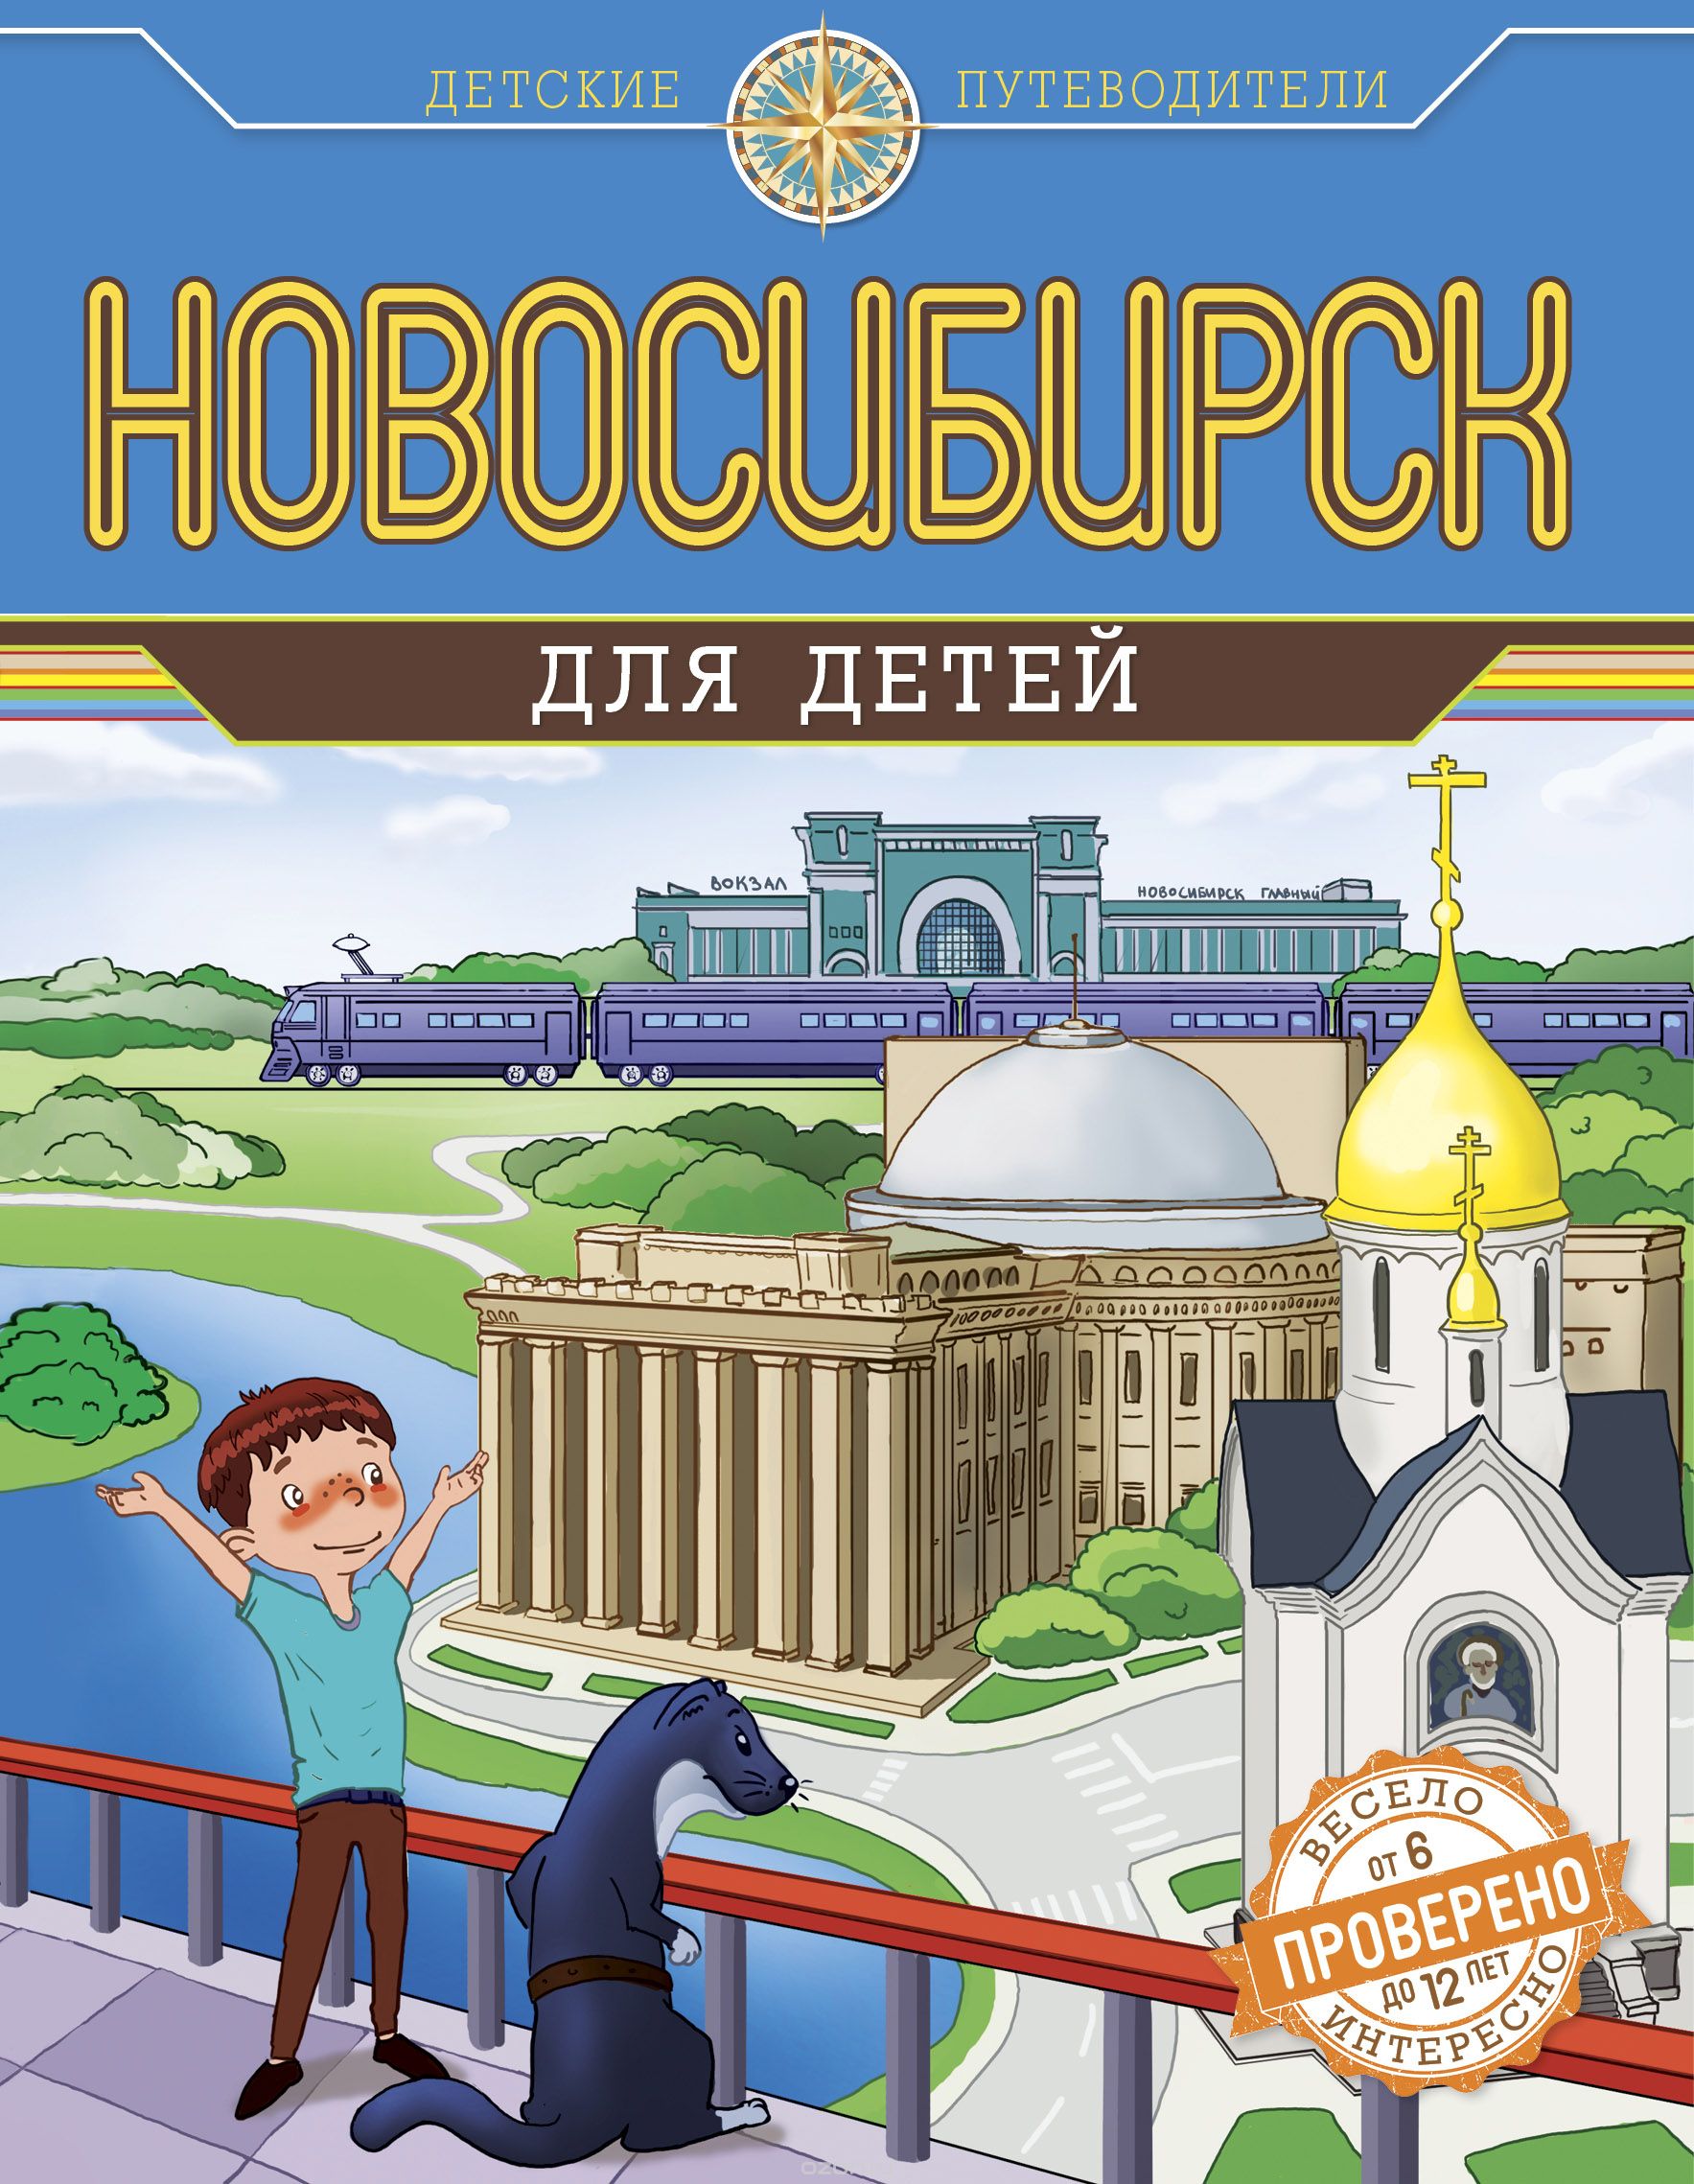 Скачать книгу "Новосибирск для детей (от 6 до 12 лет)"